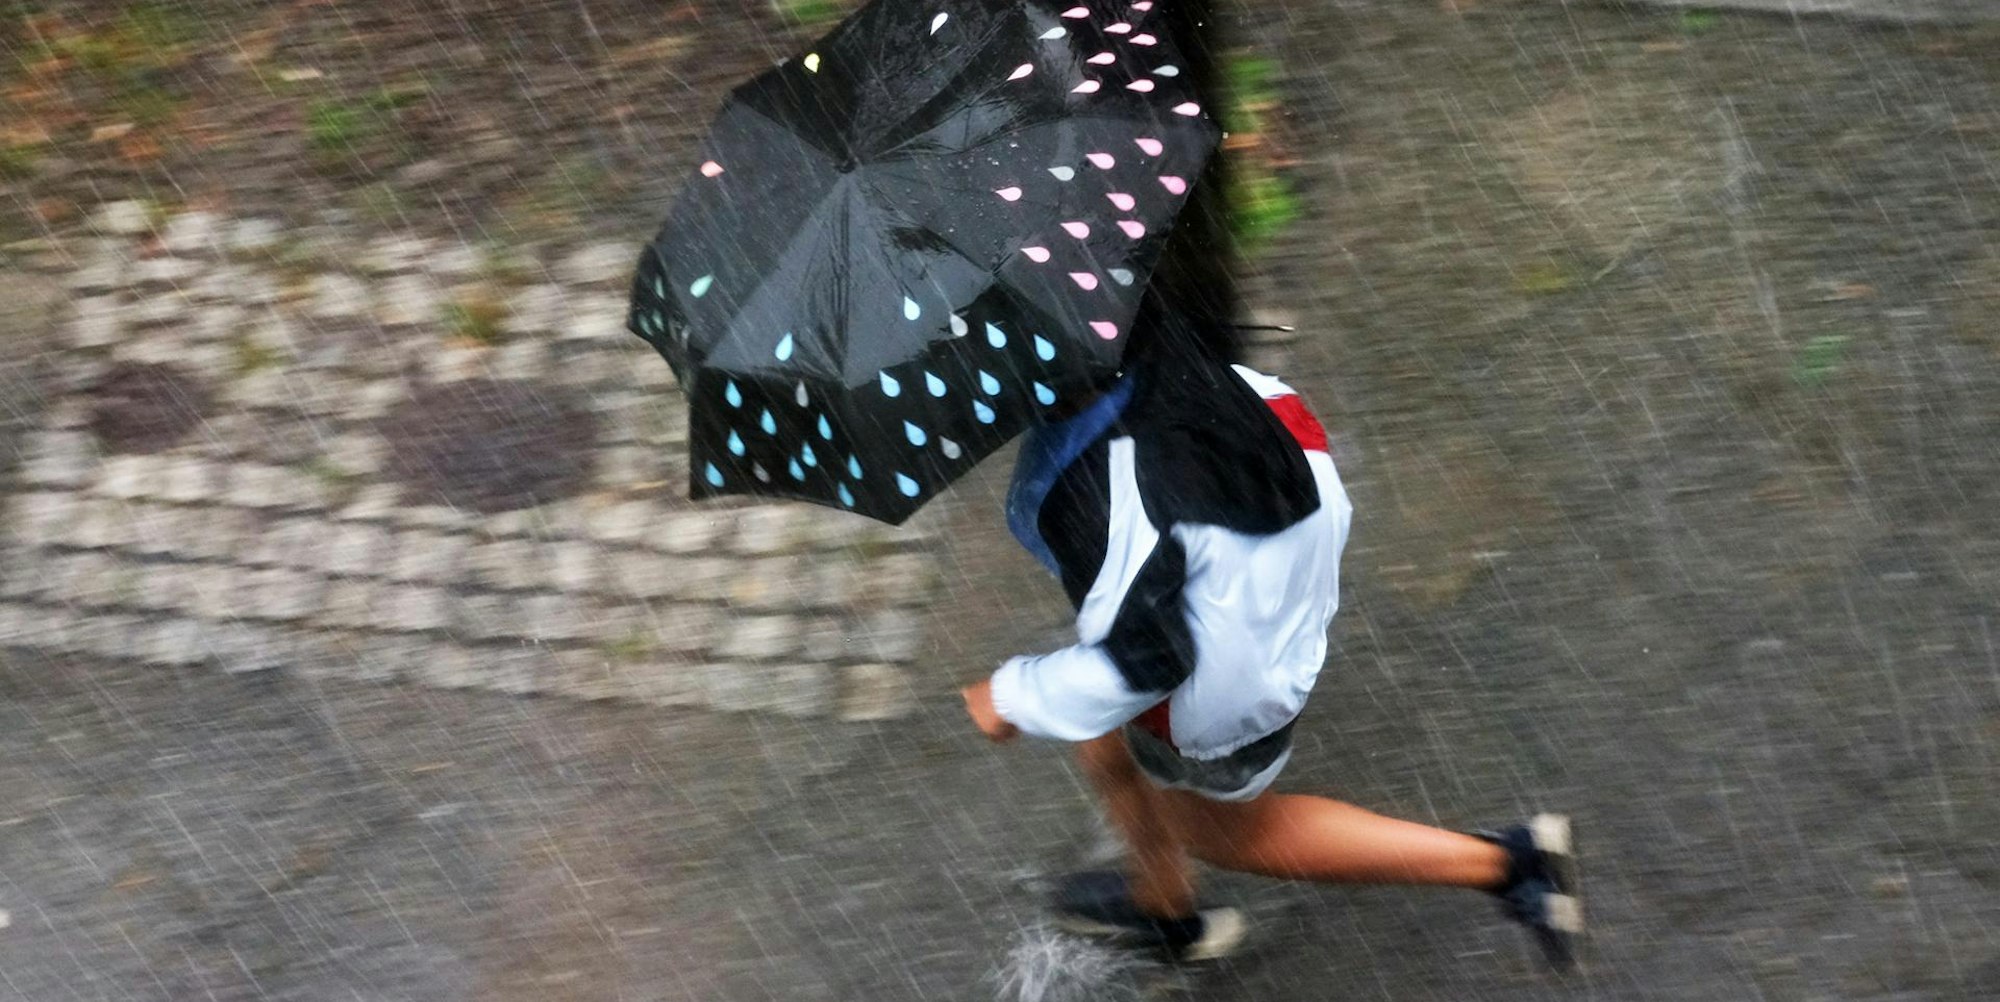 Frau rennt bei einem Sommergewitter mit Schirm herum